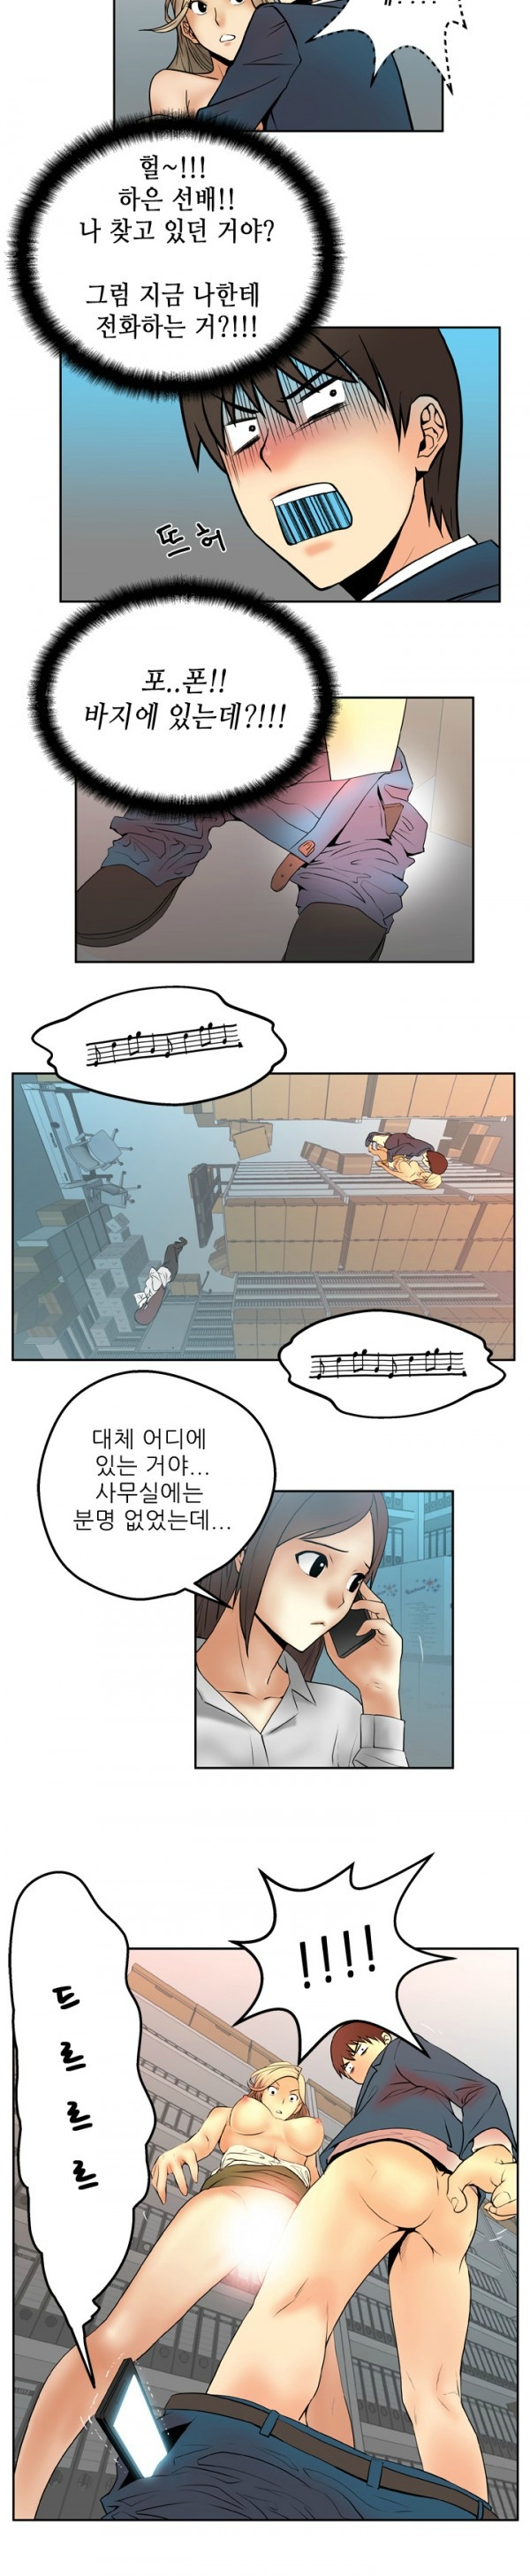 [Minu Mindu] Office Lady Vol. 1 [Korean] 50